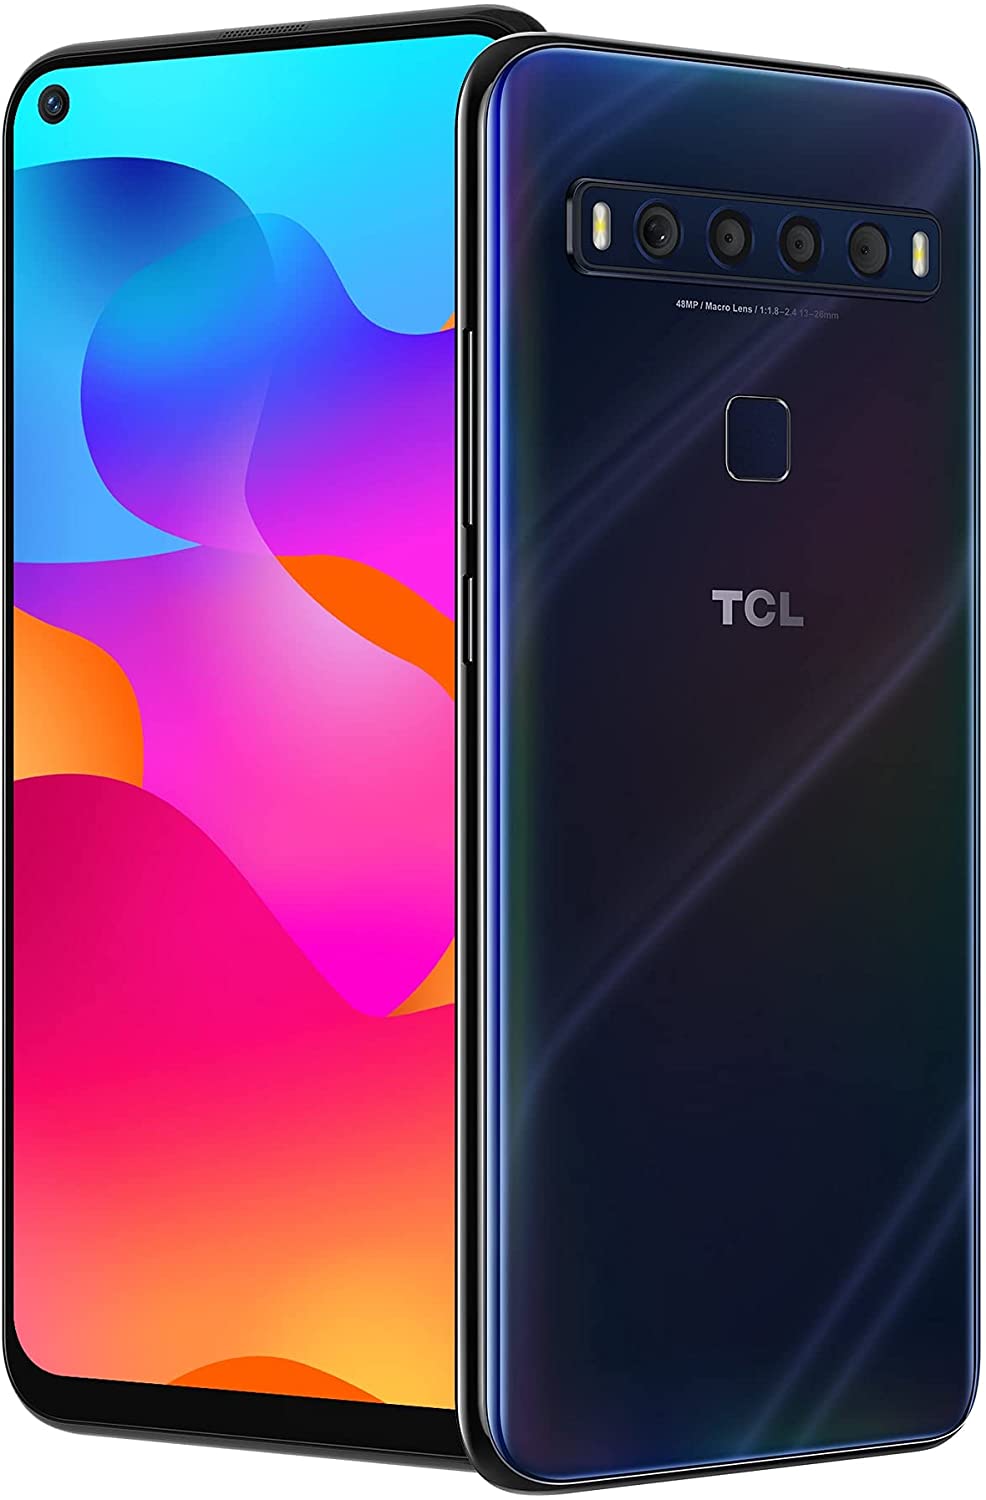 TCL 10L T770B 64GB Unlocked Smartphone (Open Box) - Mariana Blue